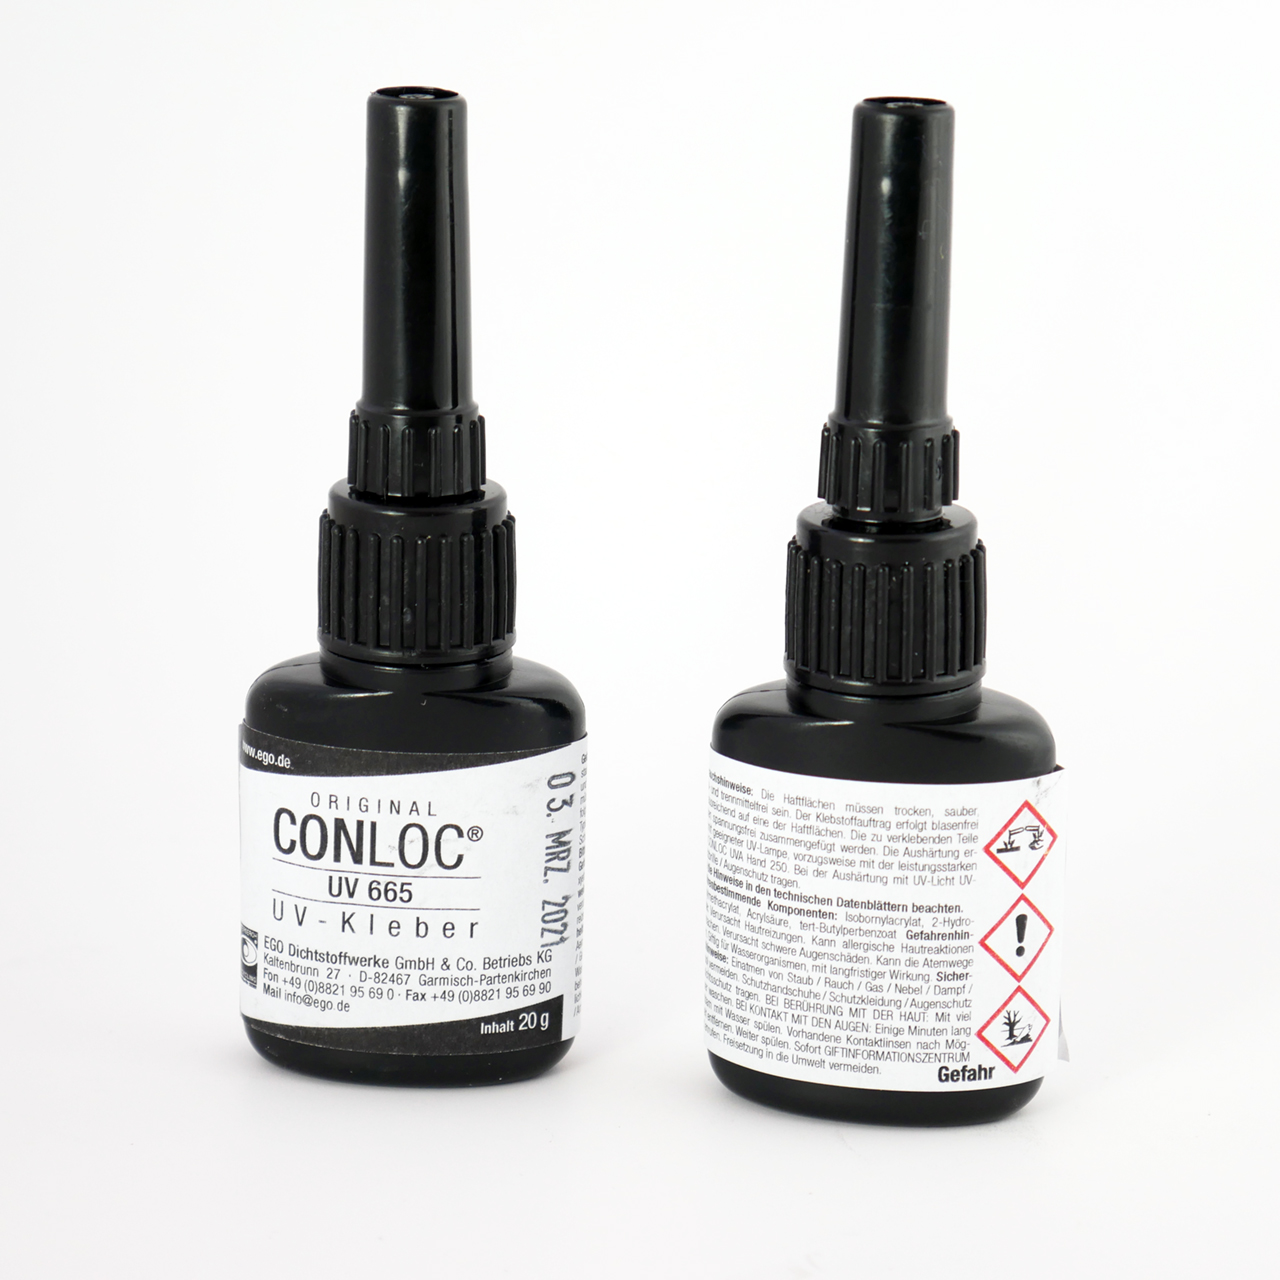 CONLOC® UV 665 UV Adhesive 20g